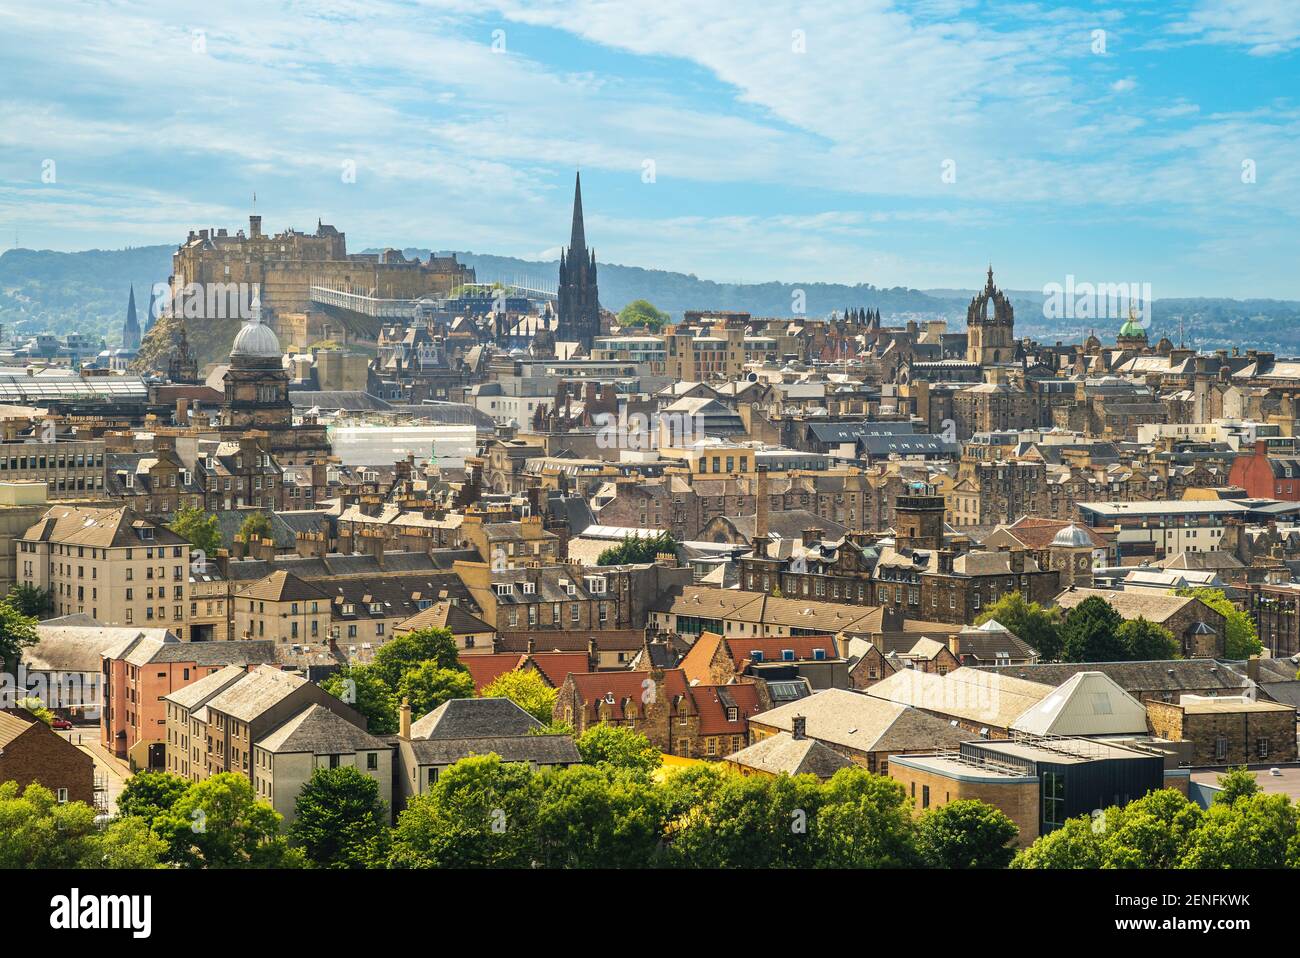 Blick über edinburgh von arthur Seat, schottland, großbritannien Stockfoto